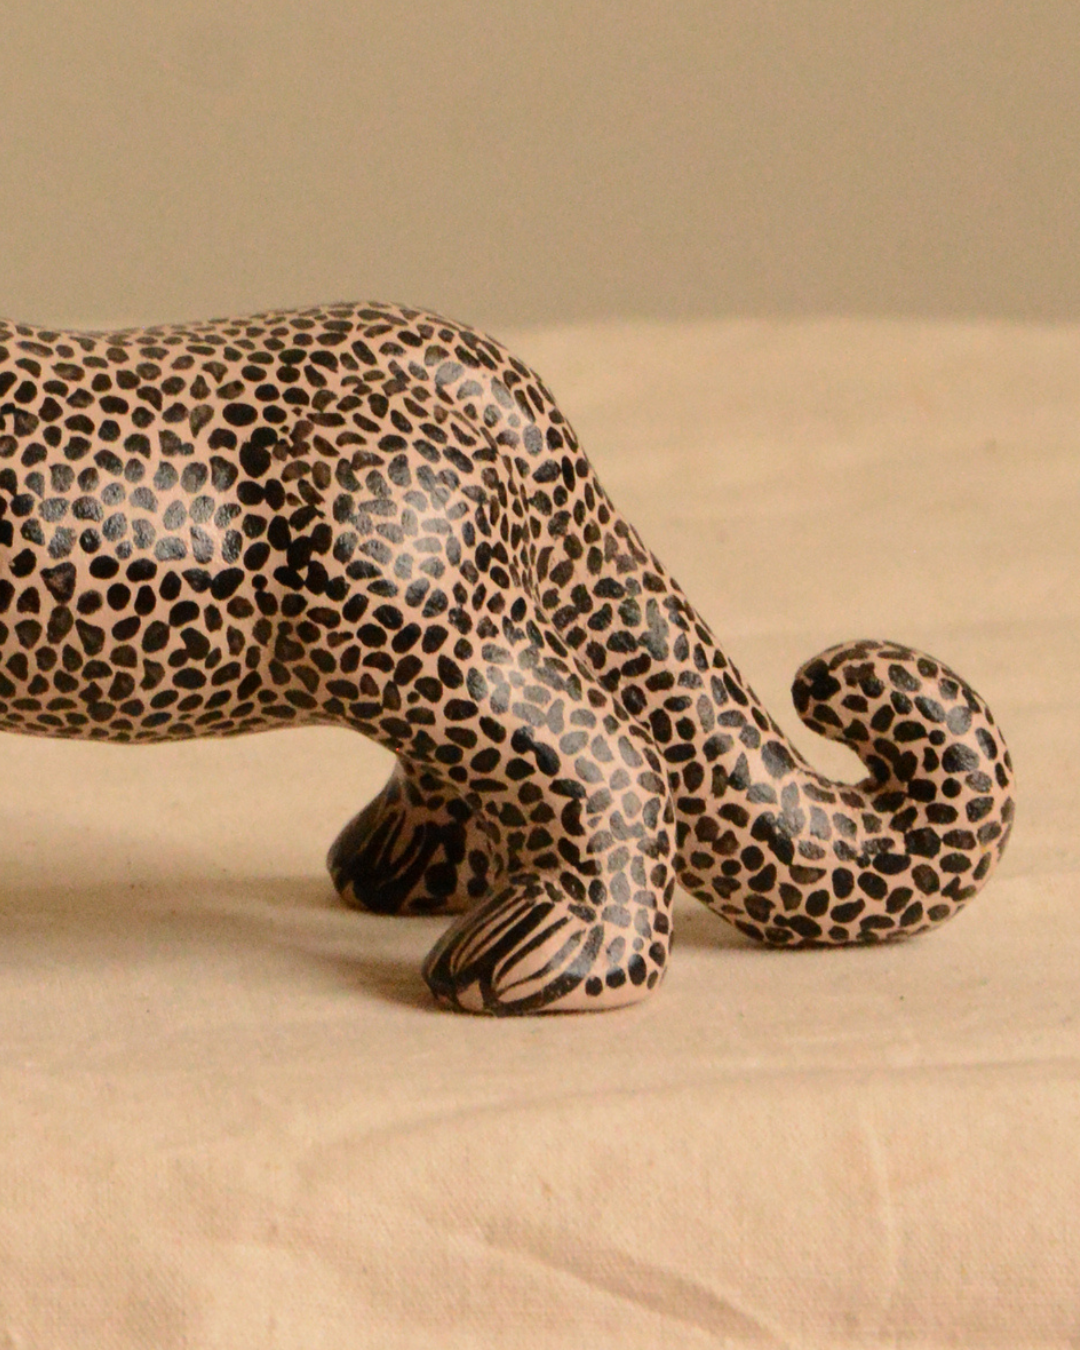 Jaguar workshop